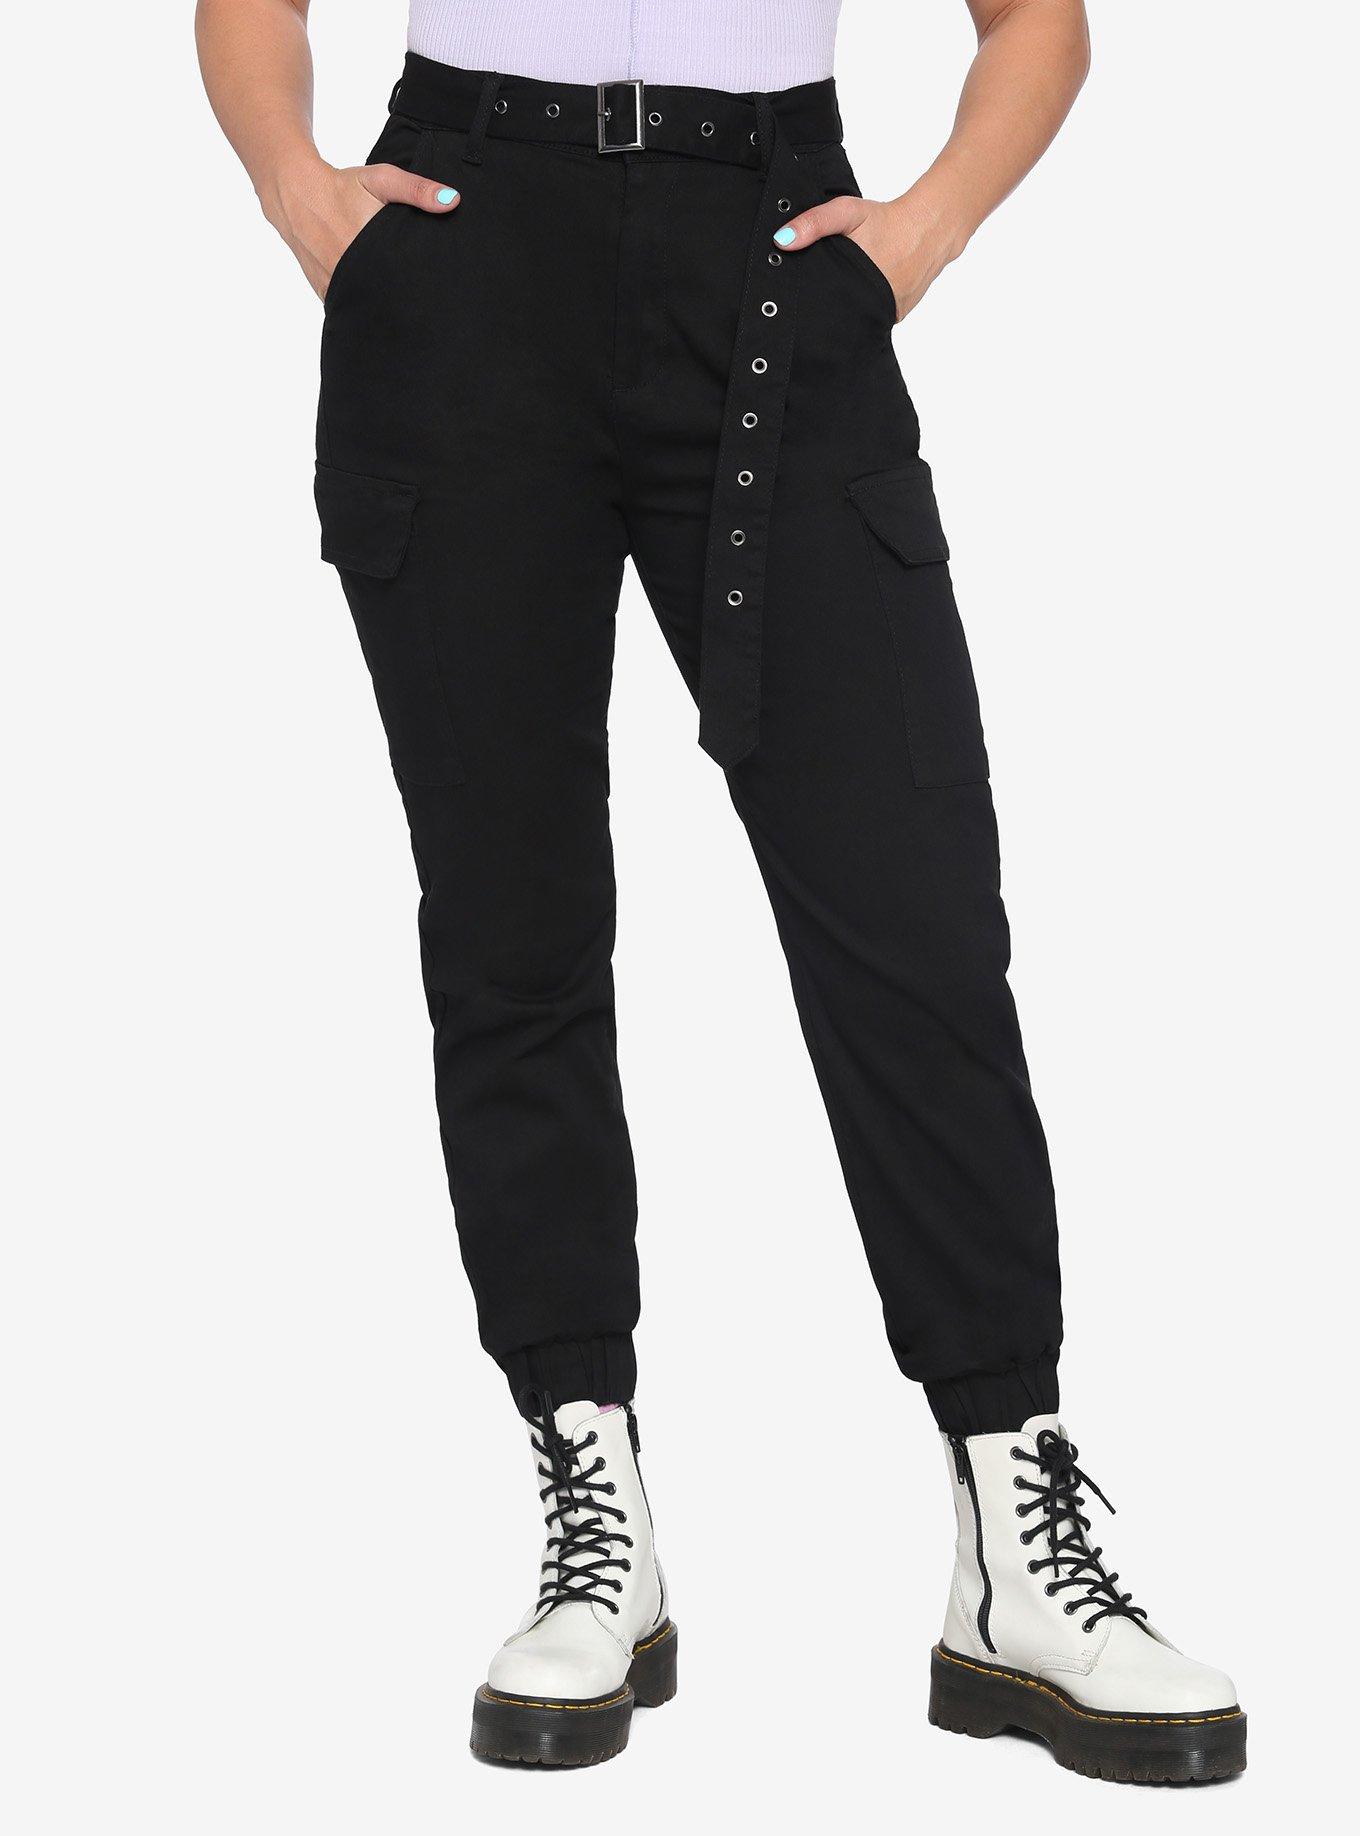 Hot Topic Black Grommet Carpenter Pants Cargo Tripp Pants Size 5 Punk  Gothic Emo